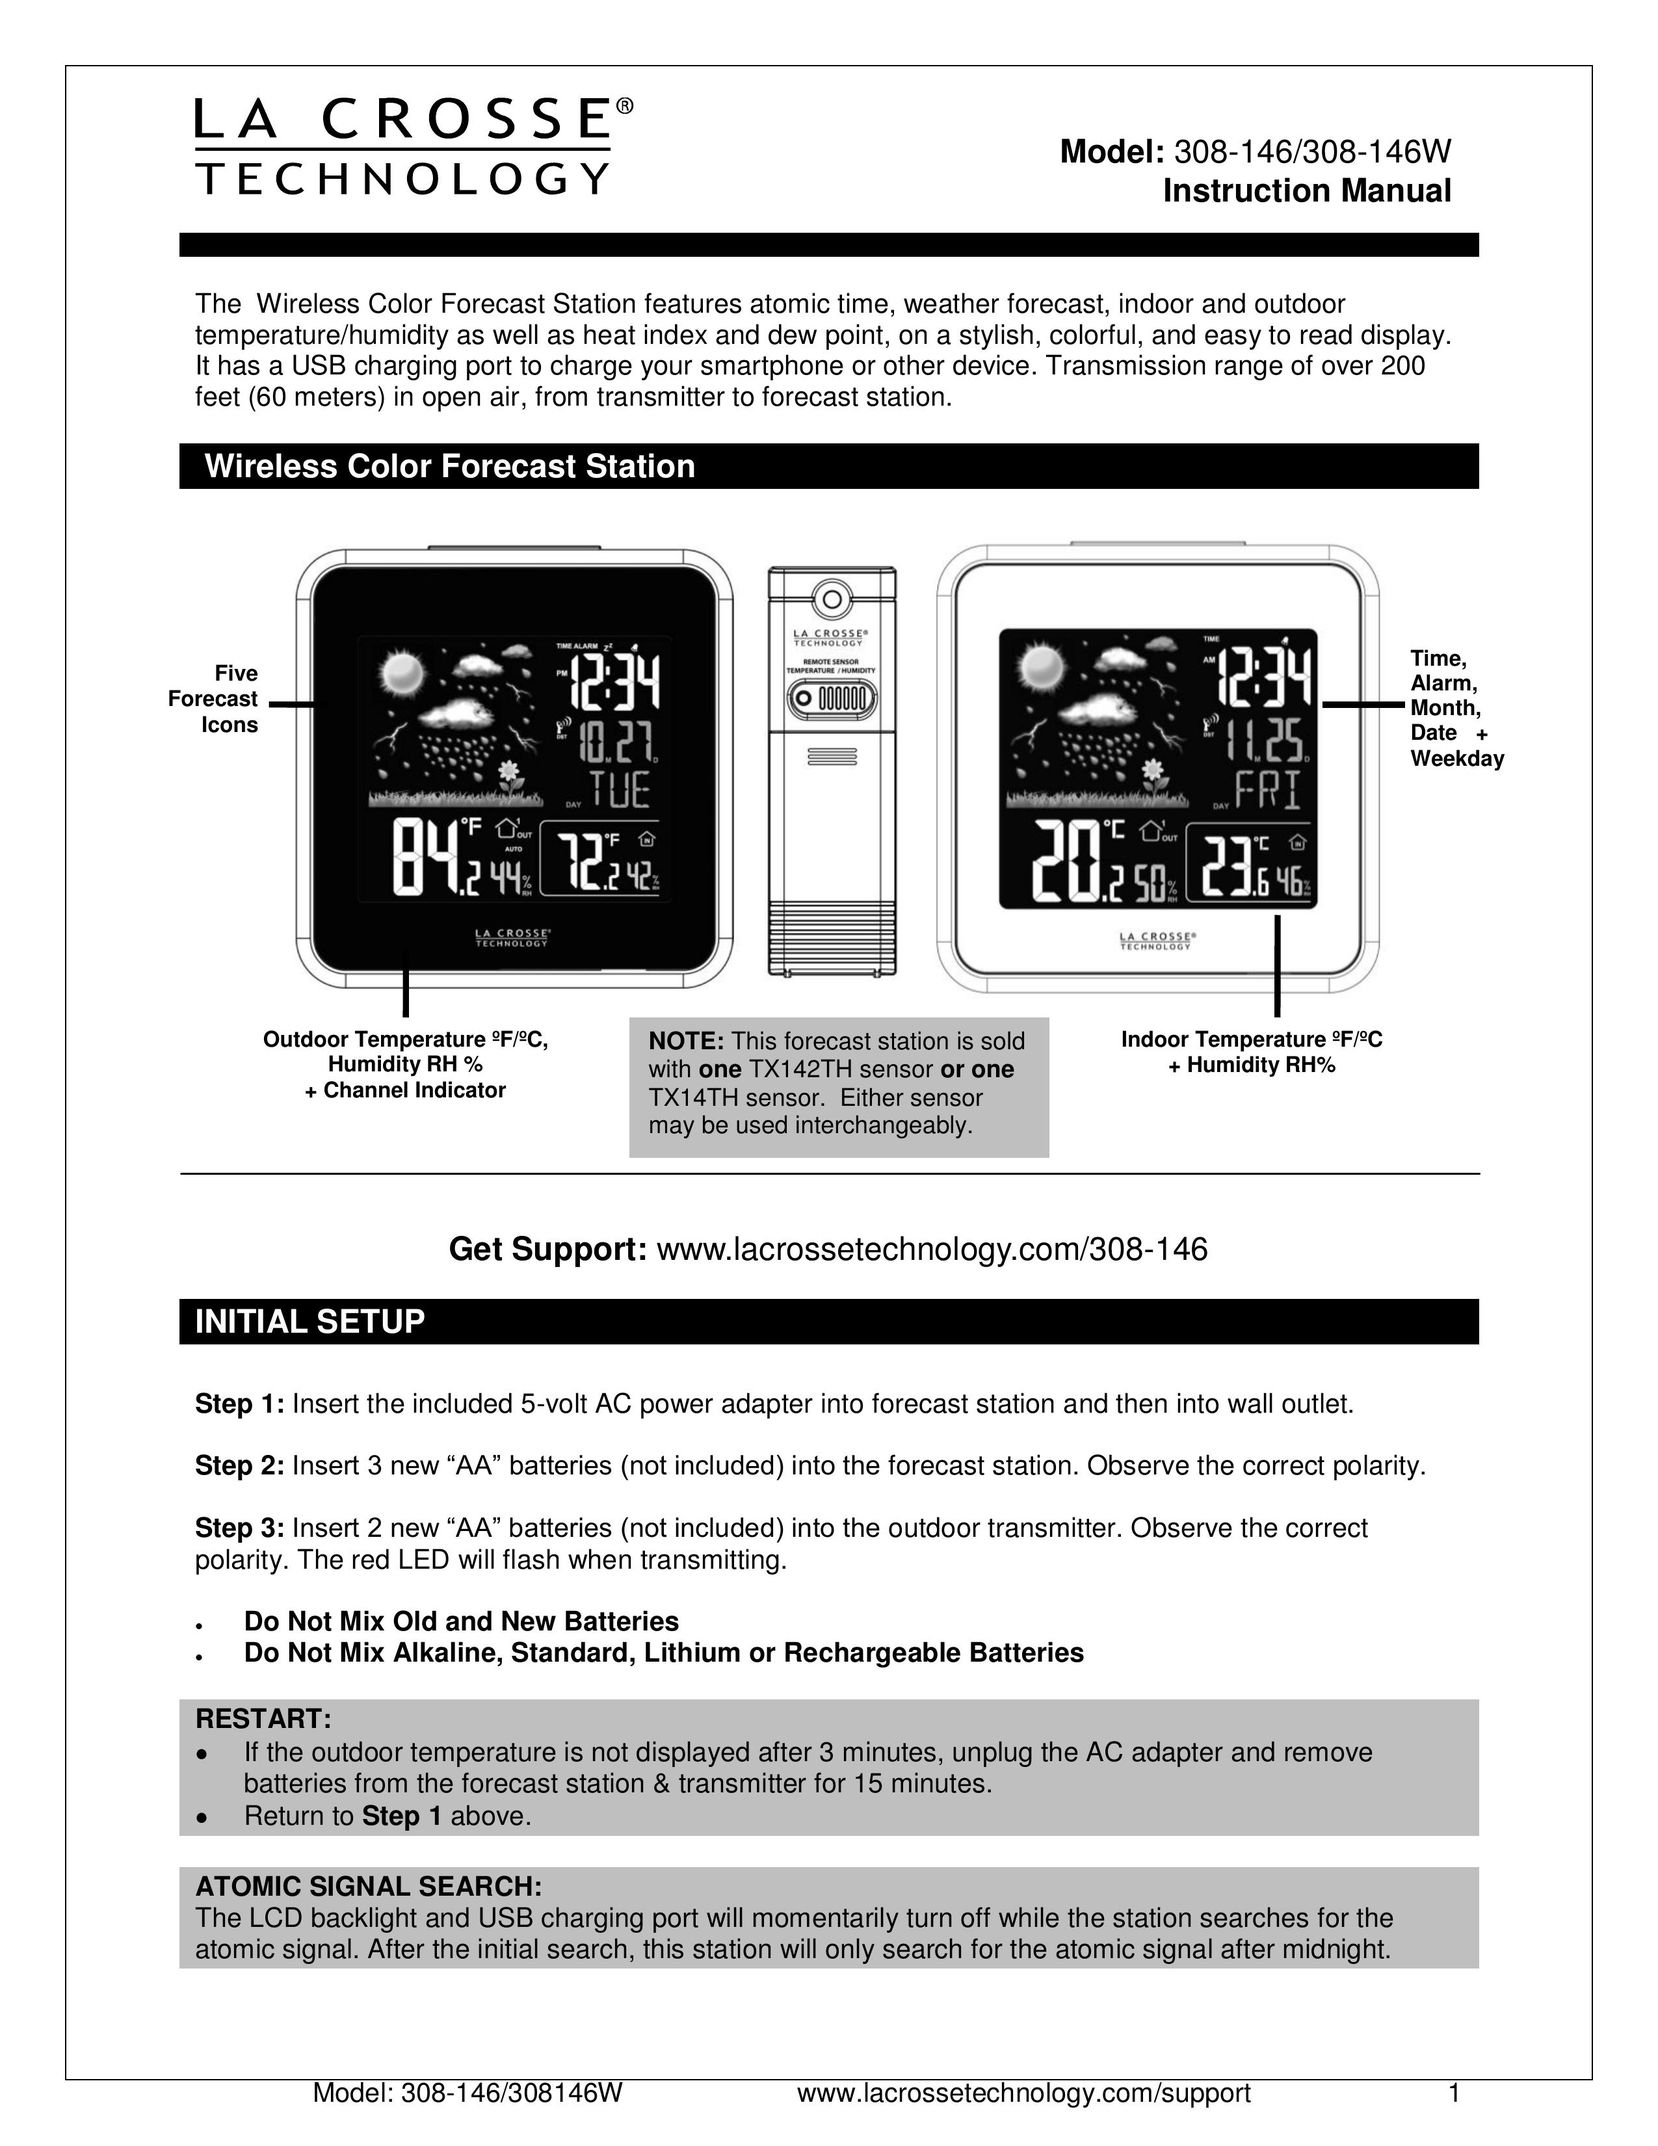 La Crosse Technology 308-146/308-146W Network Card User Manual